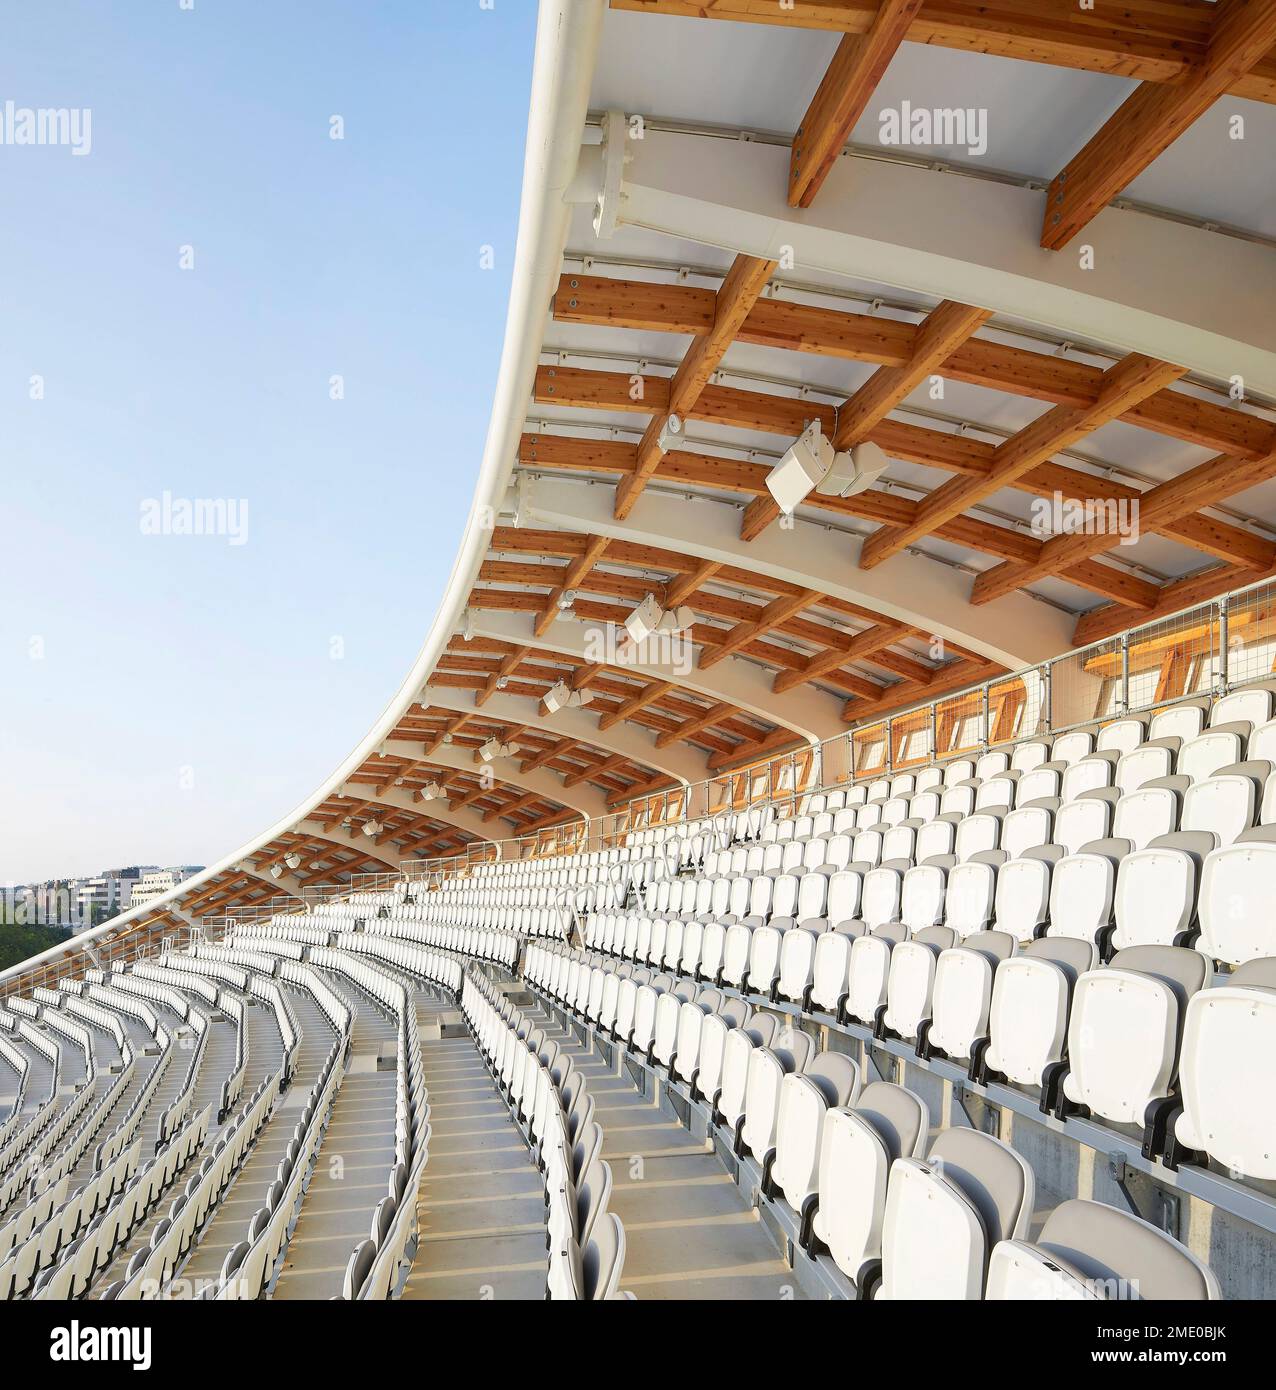 Steh mit Sitzgelegenheiten und Baldachin. Lord's Cricket Ground, London, Großbritannien. Architekt: Wilkinson Eyre Architects, 2021. Stockfoto